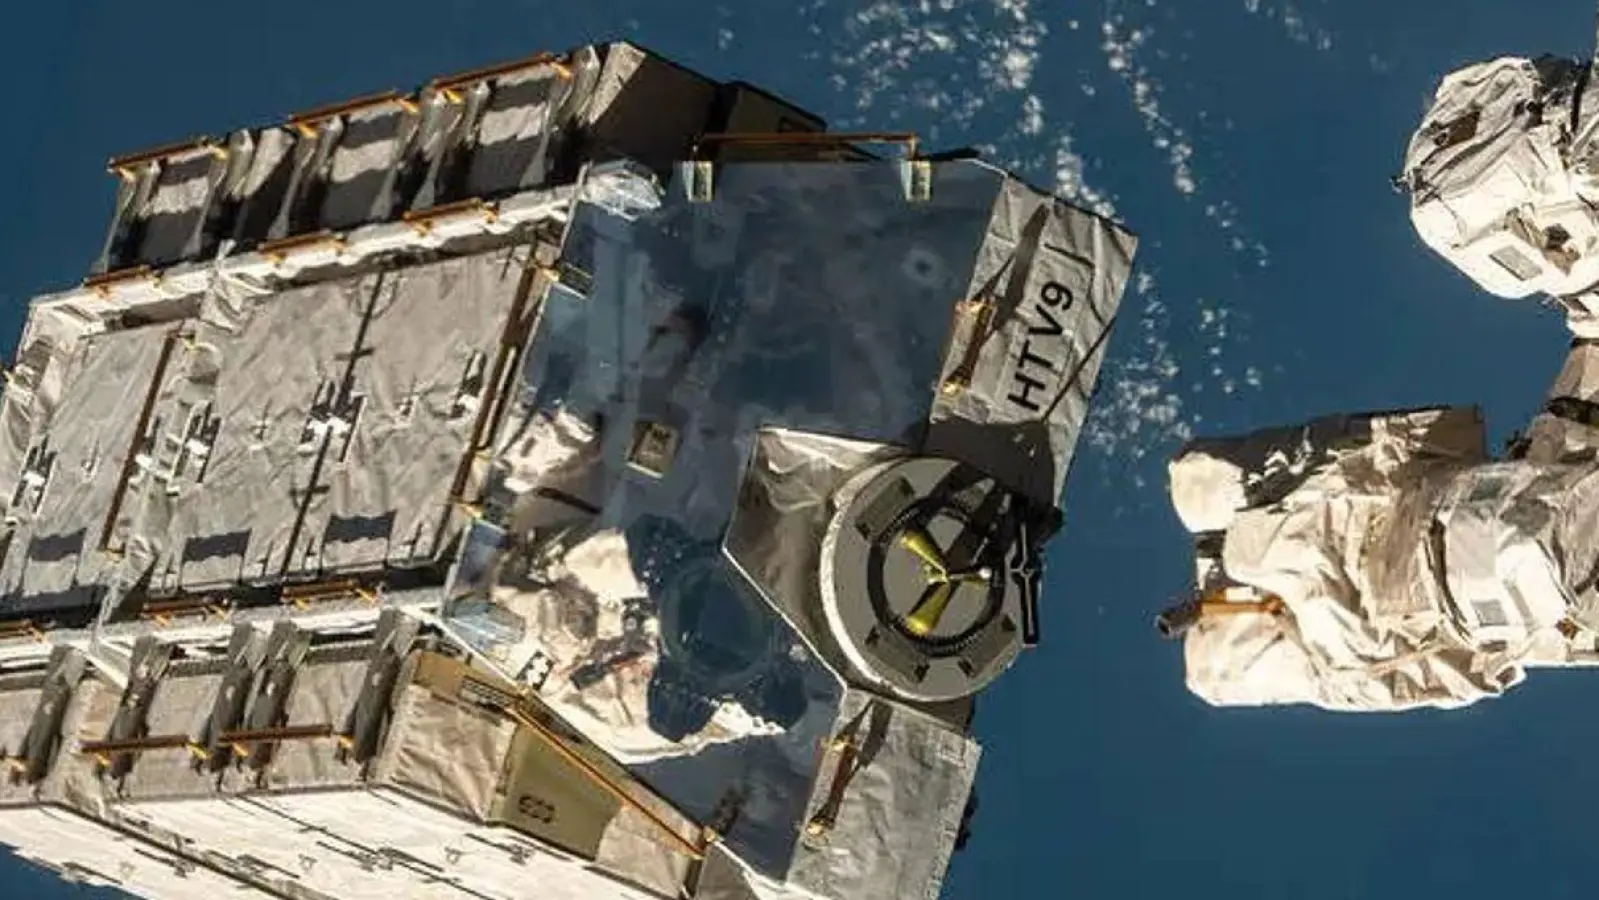 Eine externe Palette mit ausgedienten Nickel-Wasserstoff-Batterien wird von einem Roboterarm der ISS freigegeben. (Foto: Nasa/dpa)